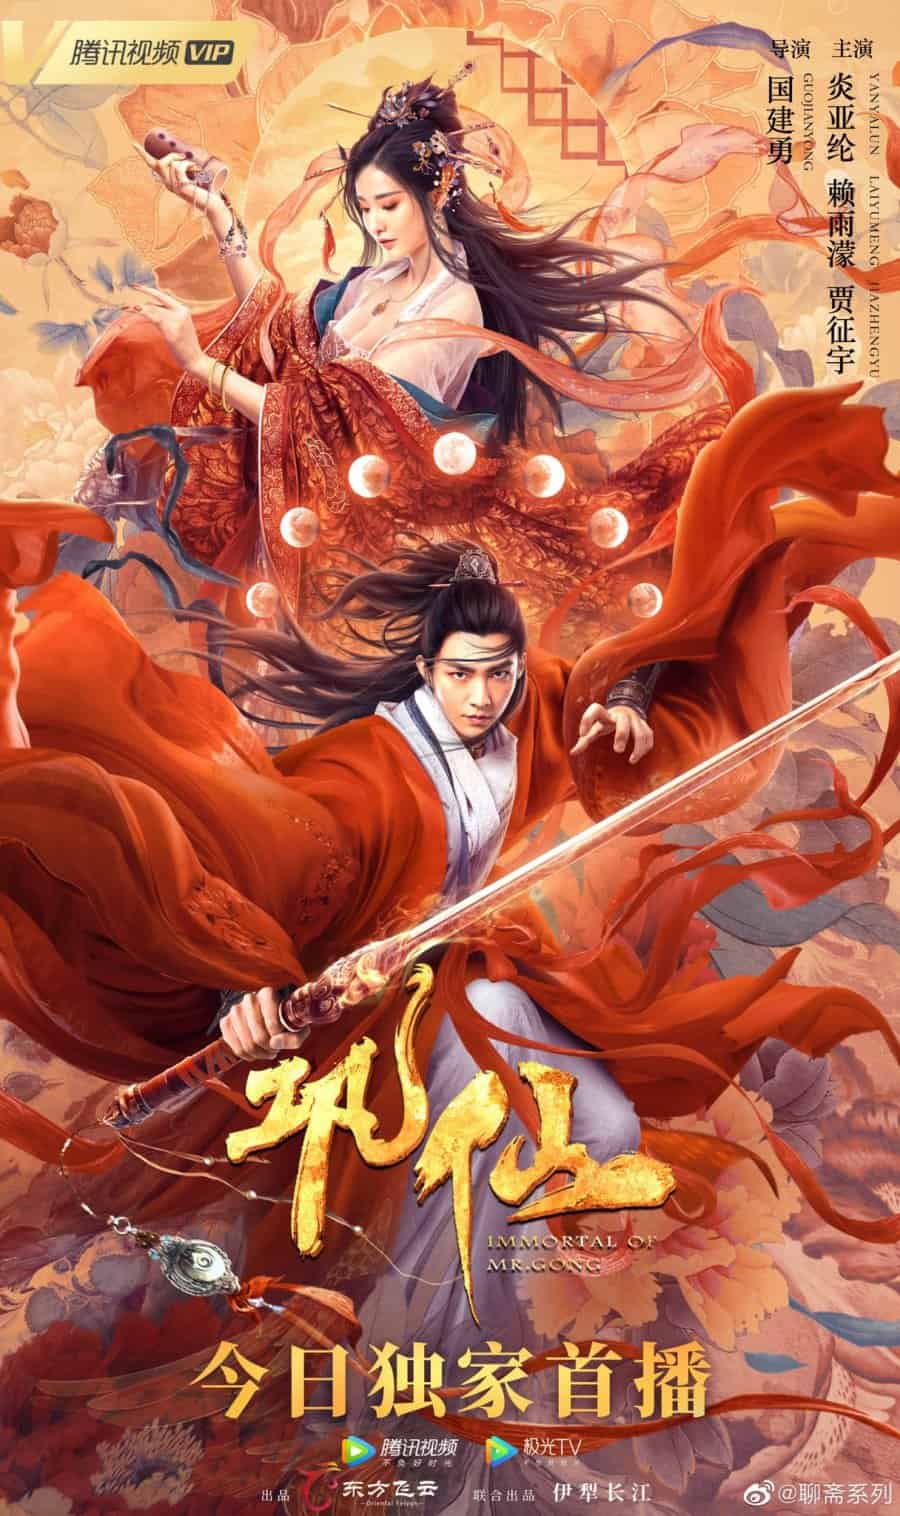 ดูหนังจีน Immortal of Mr. Gong (2020) ตำนานก่งเซียน HD พากย์ไทย ซับไทย เต็มเรื่อง